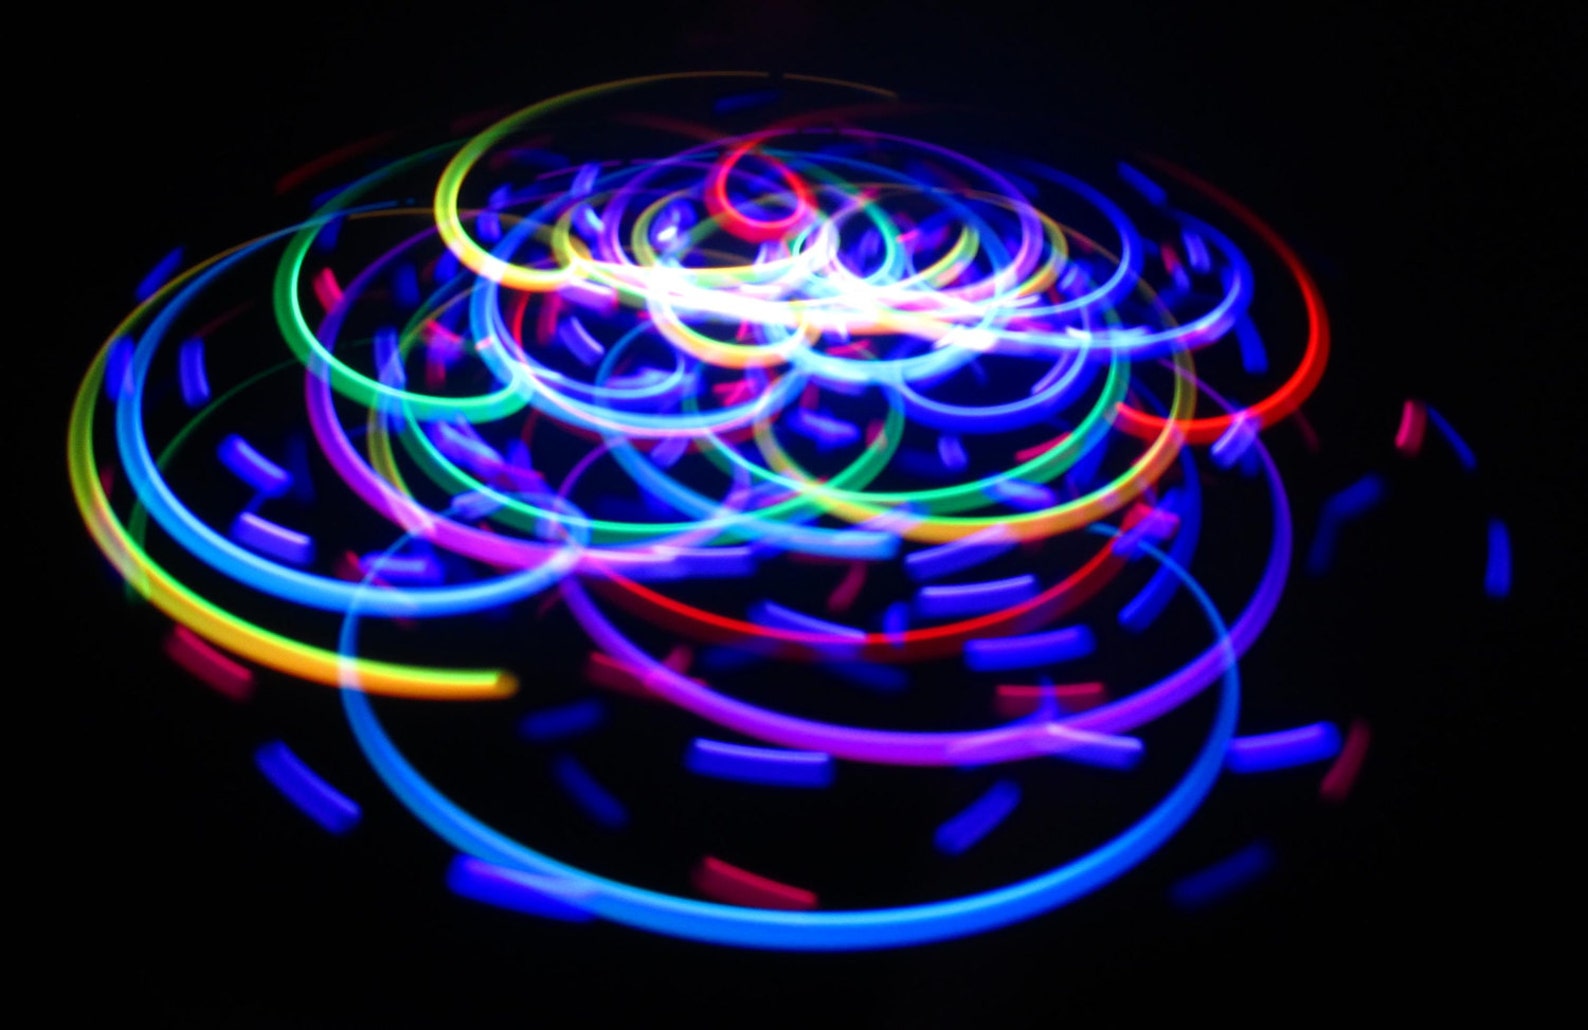 Light spinning